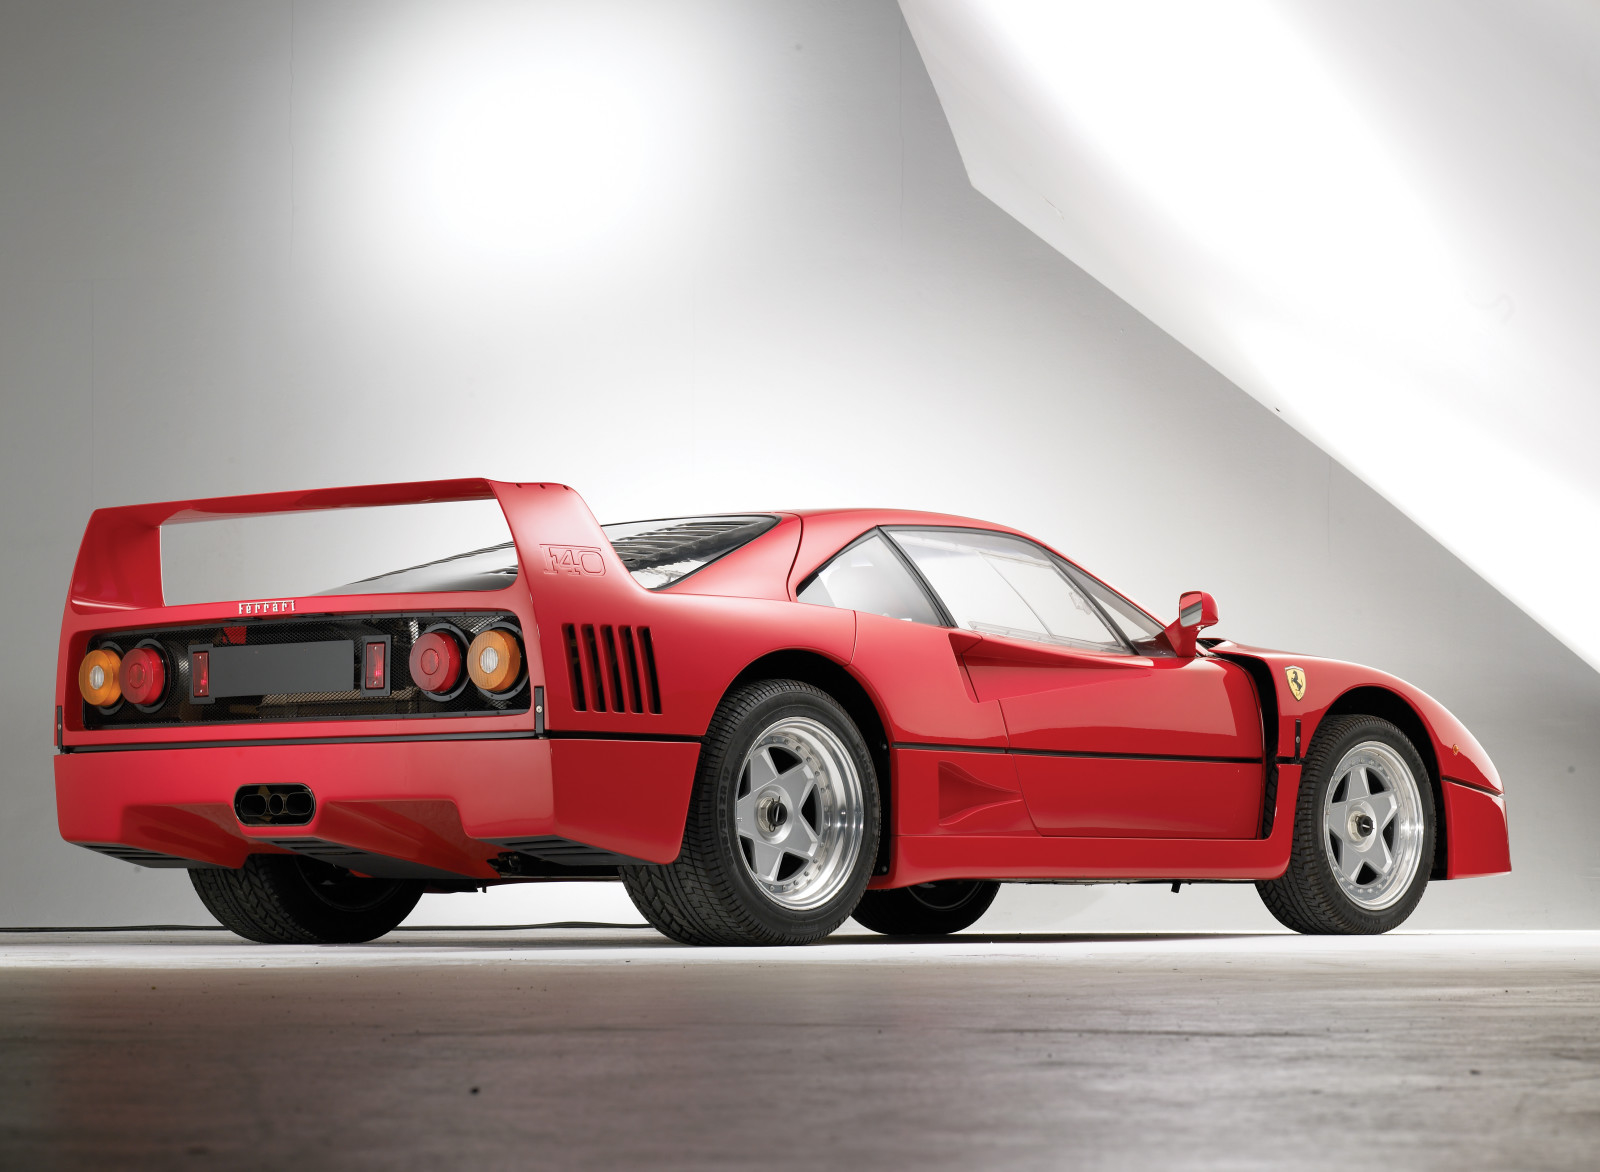 Carros que amamos #01 – Ferrari F40